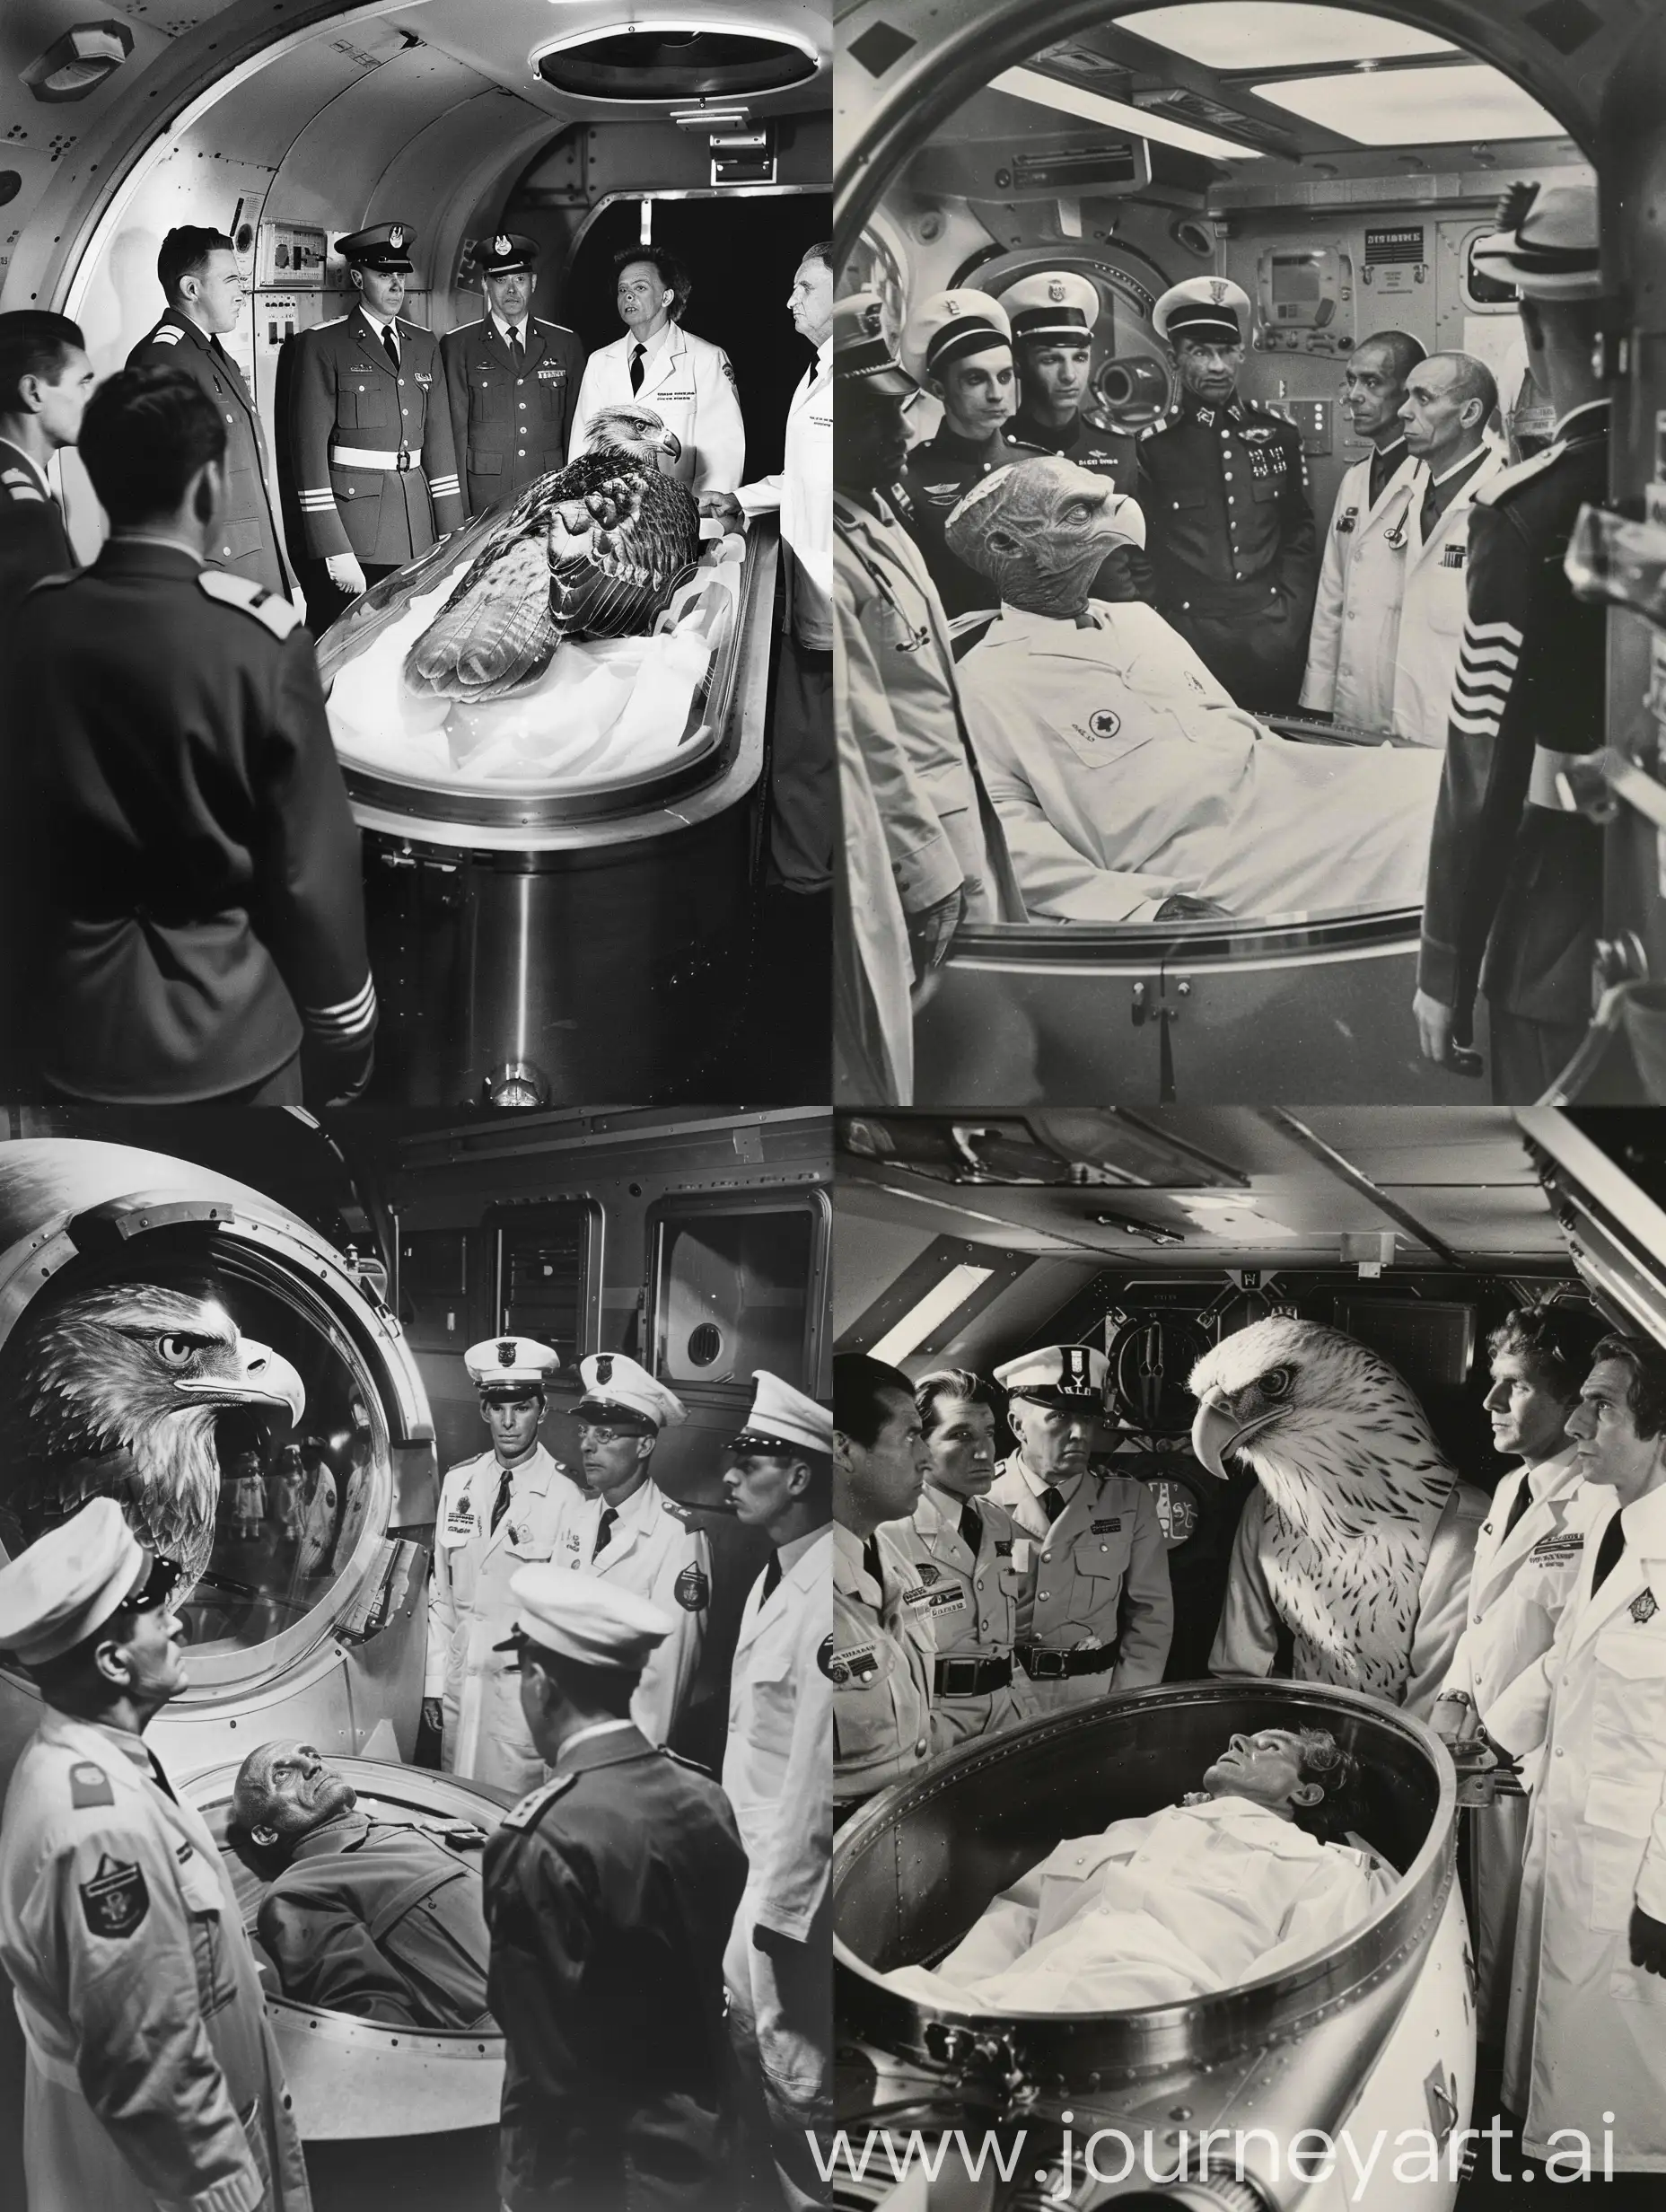 На космическом корабле в медицинском отделе собрались несколько офицеров в форме, несколько врачей в белых халатах. В капсуле перед собравшимися лежит человек в два раза выше обычного человека с головой орла.